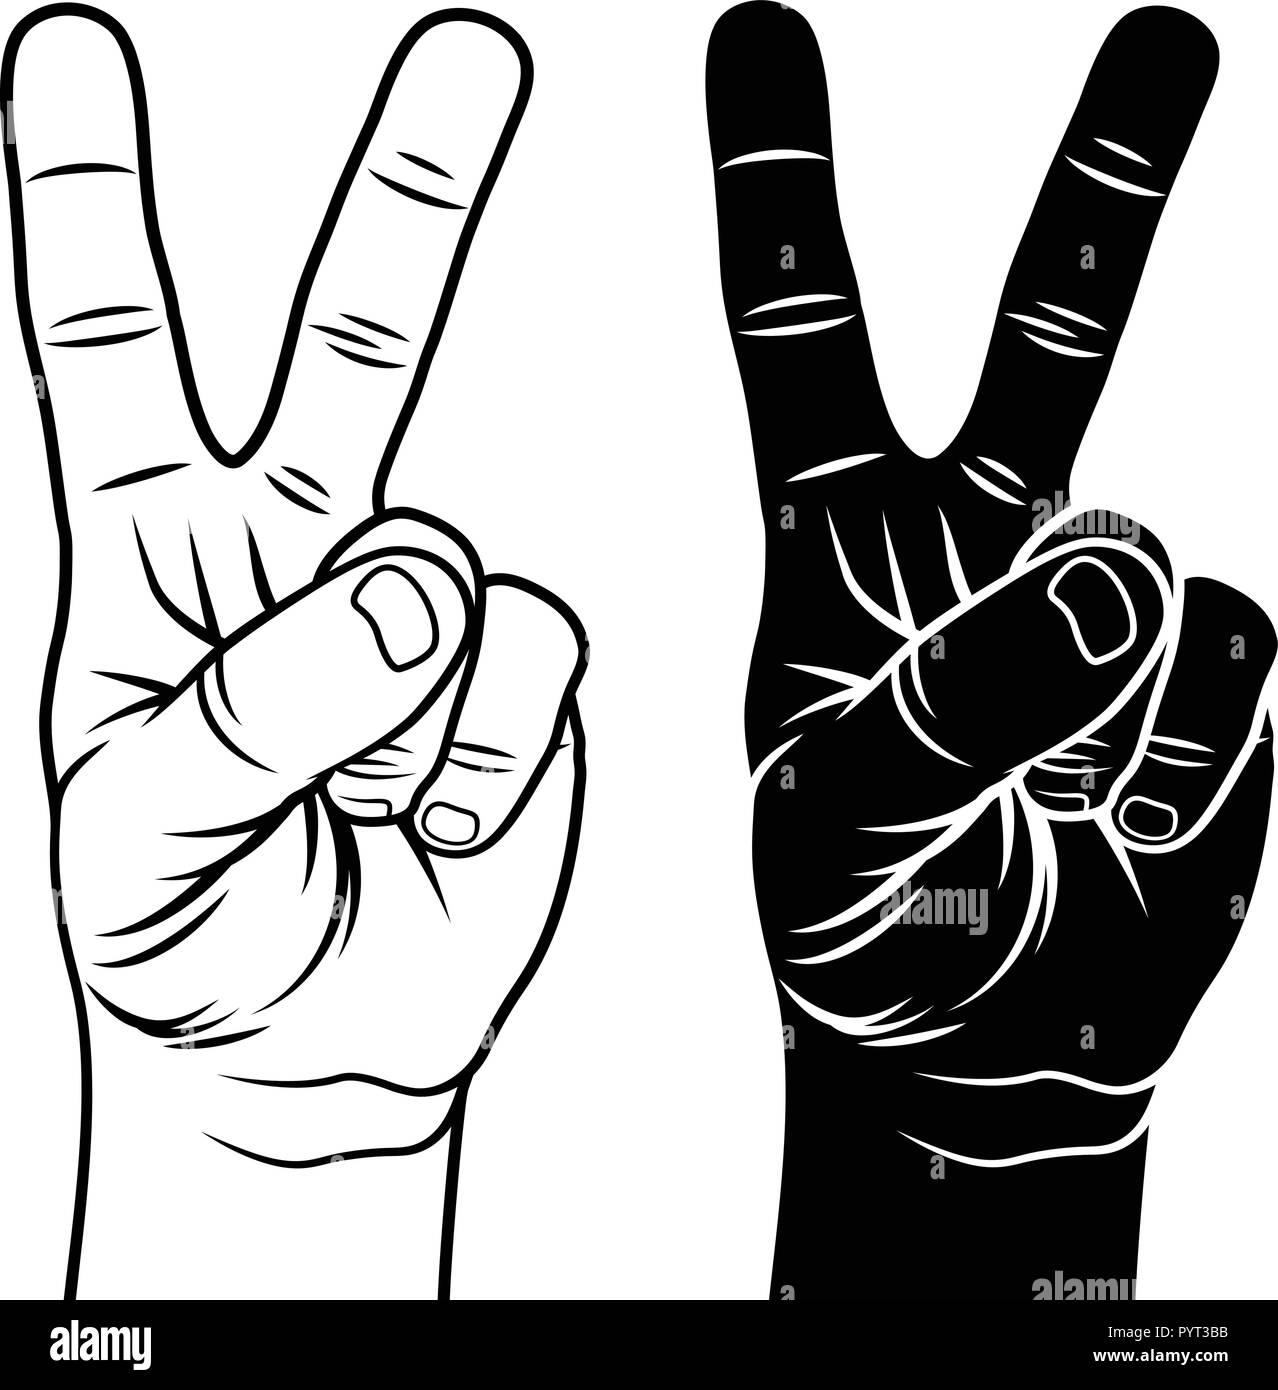 Sieg und Frieden Geste Symbol. Hand mit zwei Fingern nach oben. Handskizze Stock Vektor